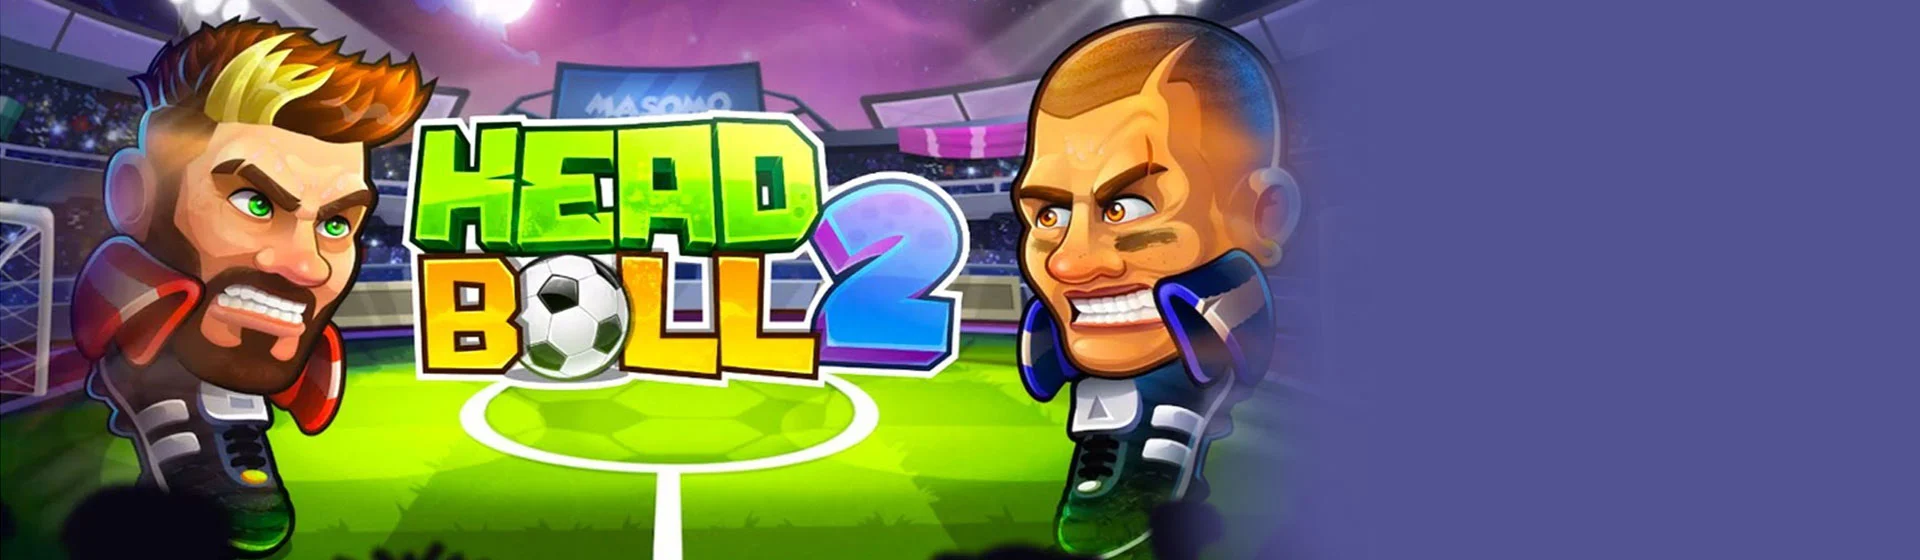 Baixar e jogar Head Ball 2 - Jogo de Futebol Online no PC com MuMu Player